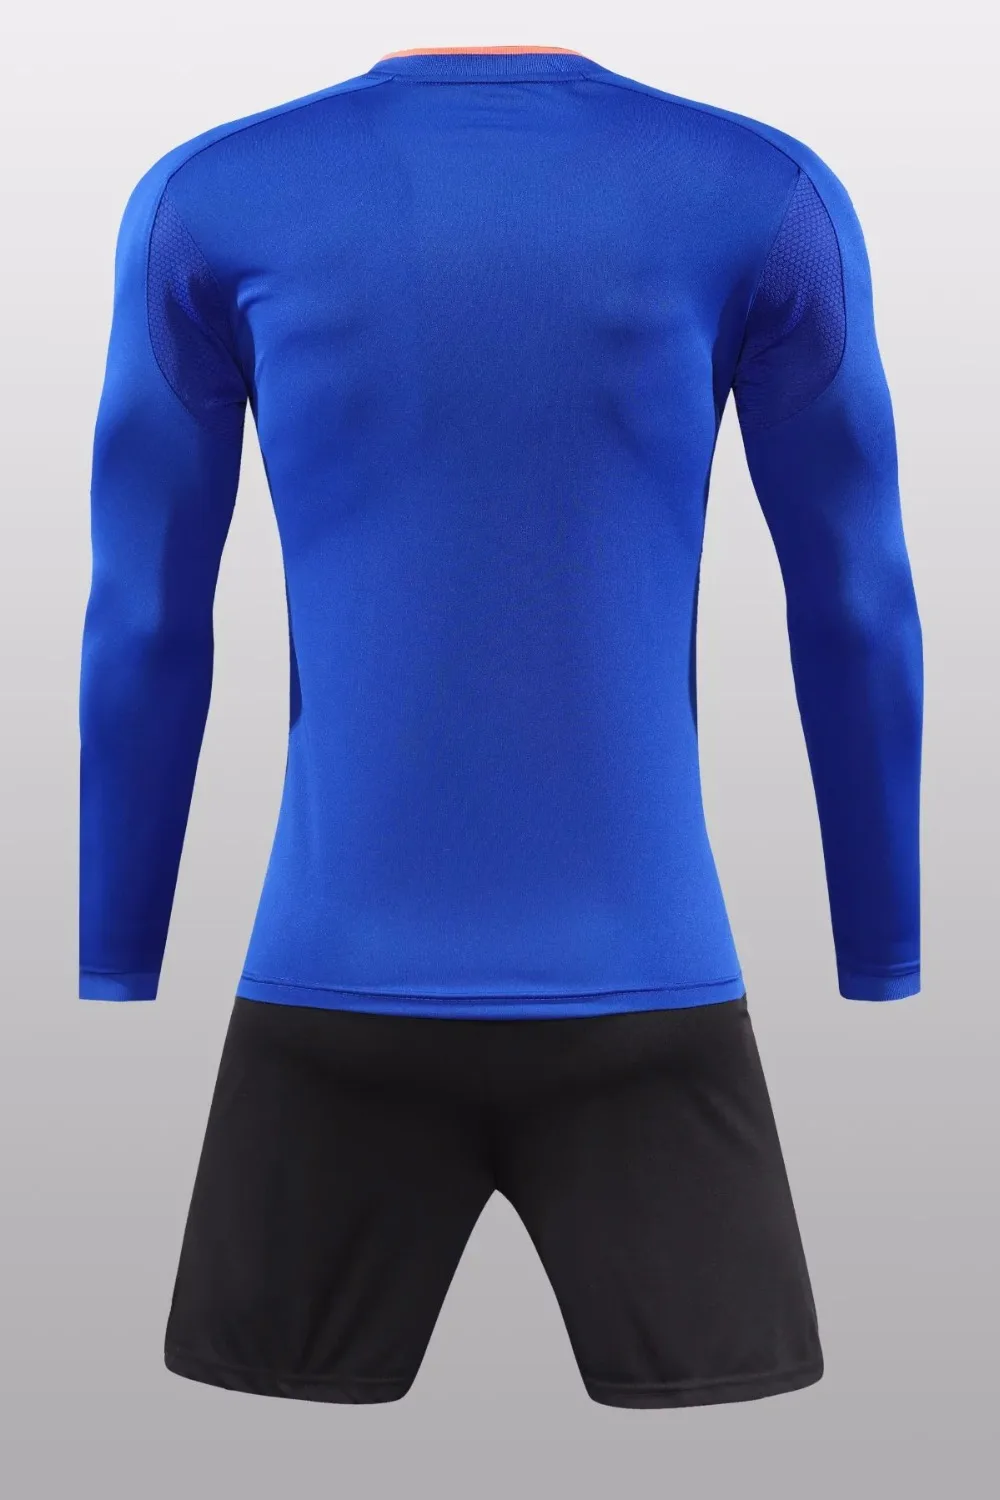 Детские дышащие футболки с длинными рукавами для футбола, детская одежда полный спектр спортивных тренировок Bao Zuqiu XS-L